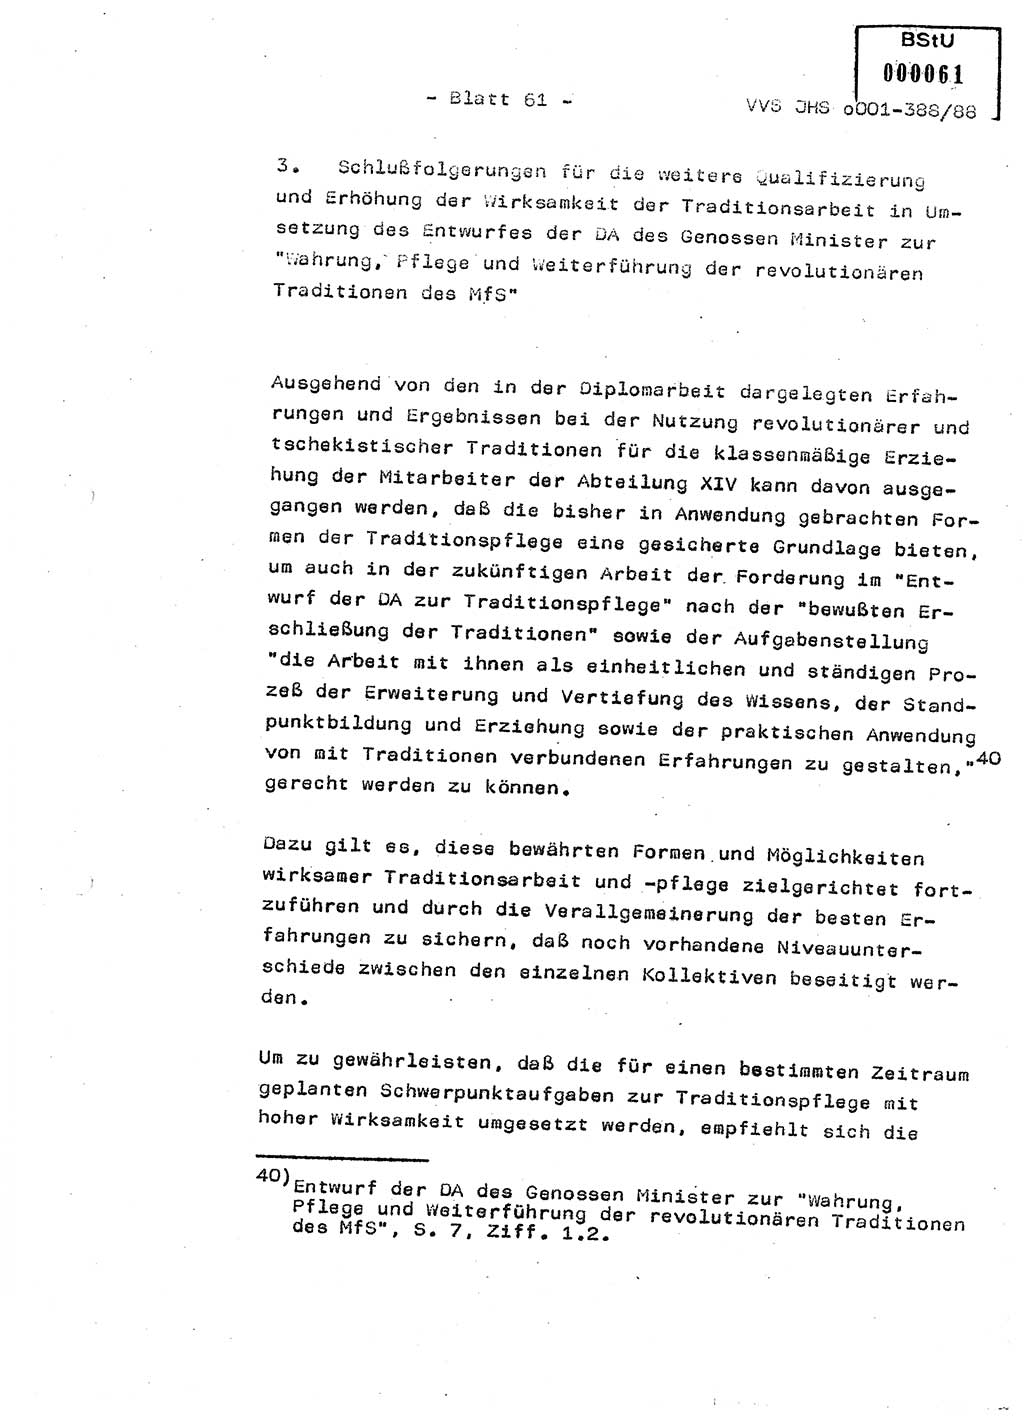 Diplomarbeit Hauptmann Heinz Brixel (Abt. ⅩⅣ), Ministerium für Staatssicherheit (MfS) [Deutsche Demokratische Republik (DDR)], Juristische Hochschule (JHS), Vertrauliche Verschlußsache (VVS) o001-388/88, Potsdam 1988, Blatt 61 (Dipl.-Arb. MfS DDR JHS VVS o001-388/88 1988, Bl. 61)